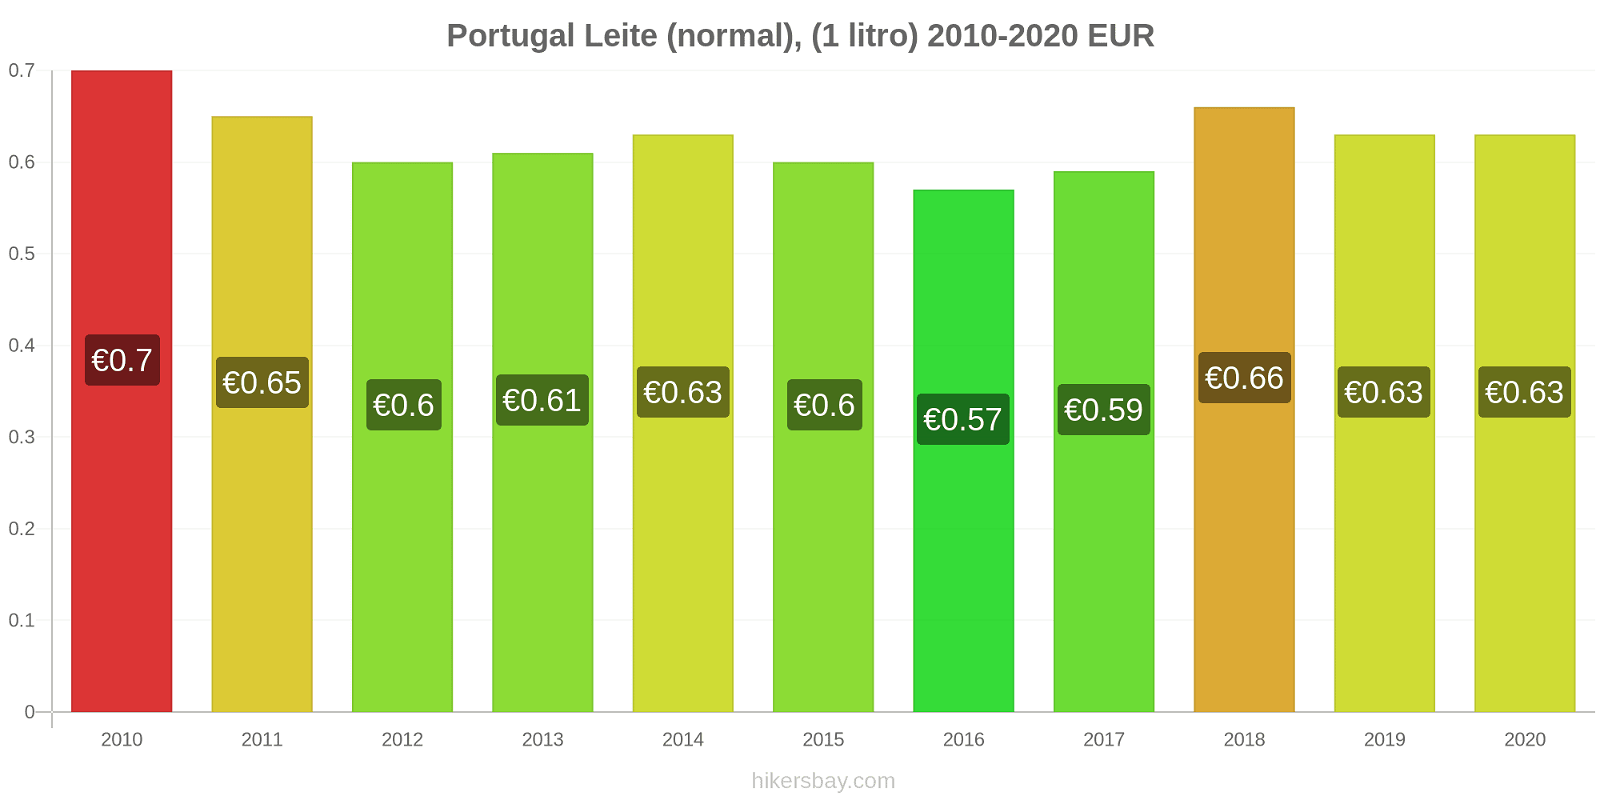 Portugal variação de preço (Regular), leite (1 litro) hikersbay.com